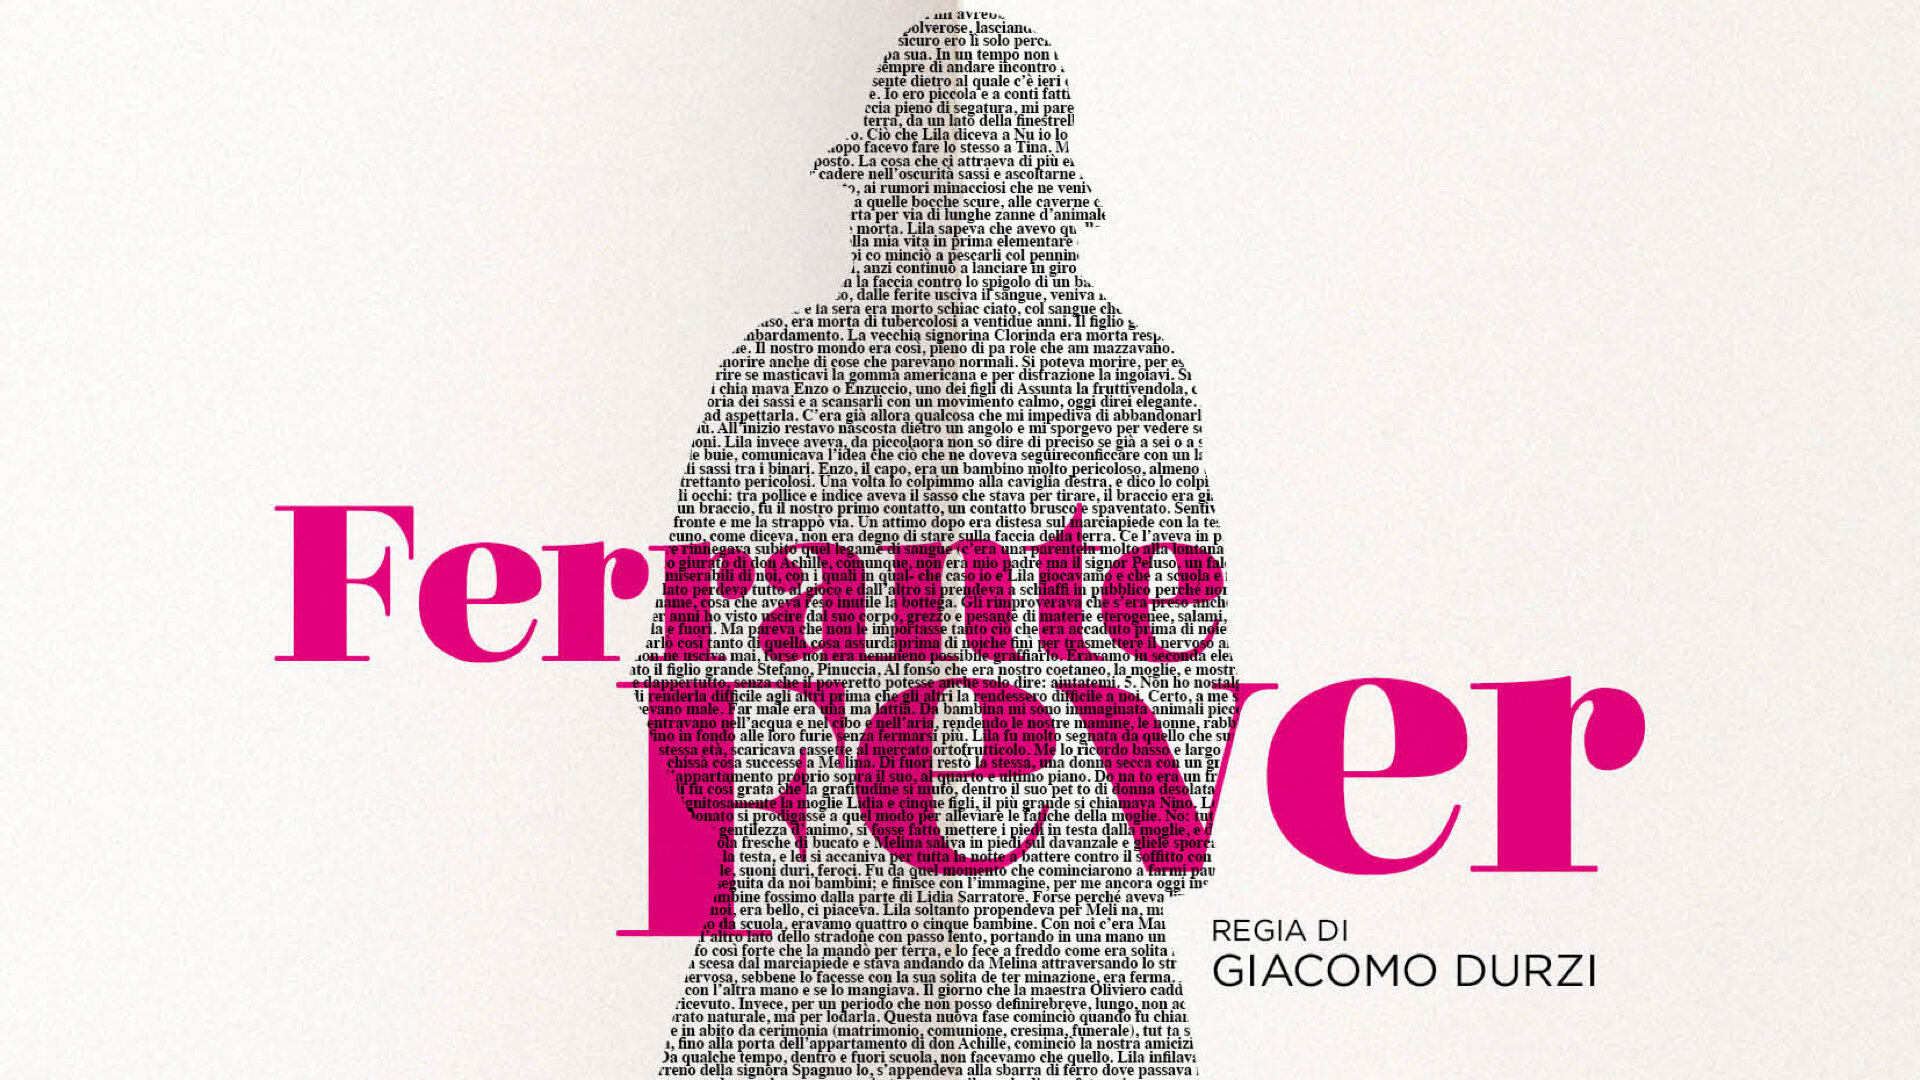 Ferrante Fever, il film documentario sul fenomeno letterario di Elena Ferrante